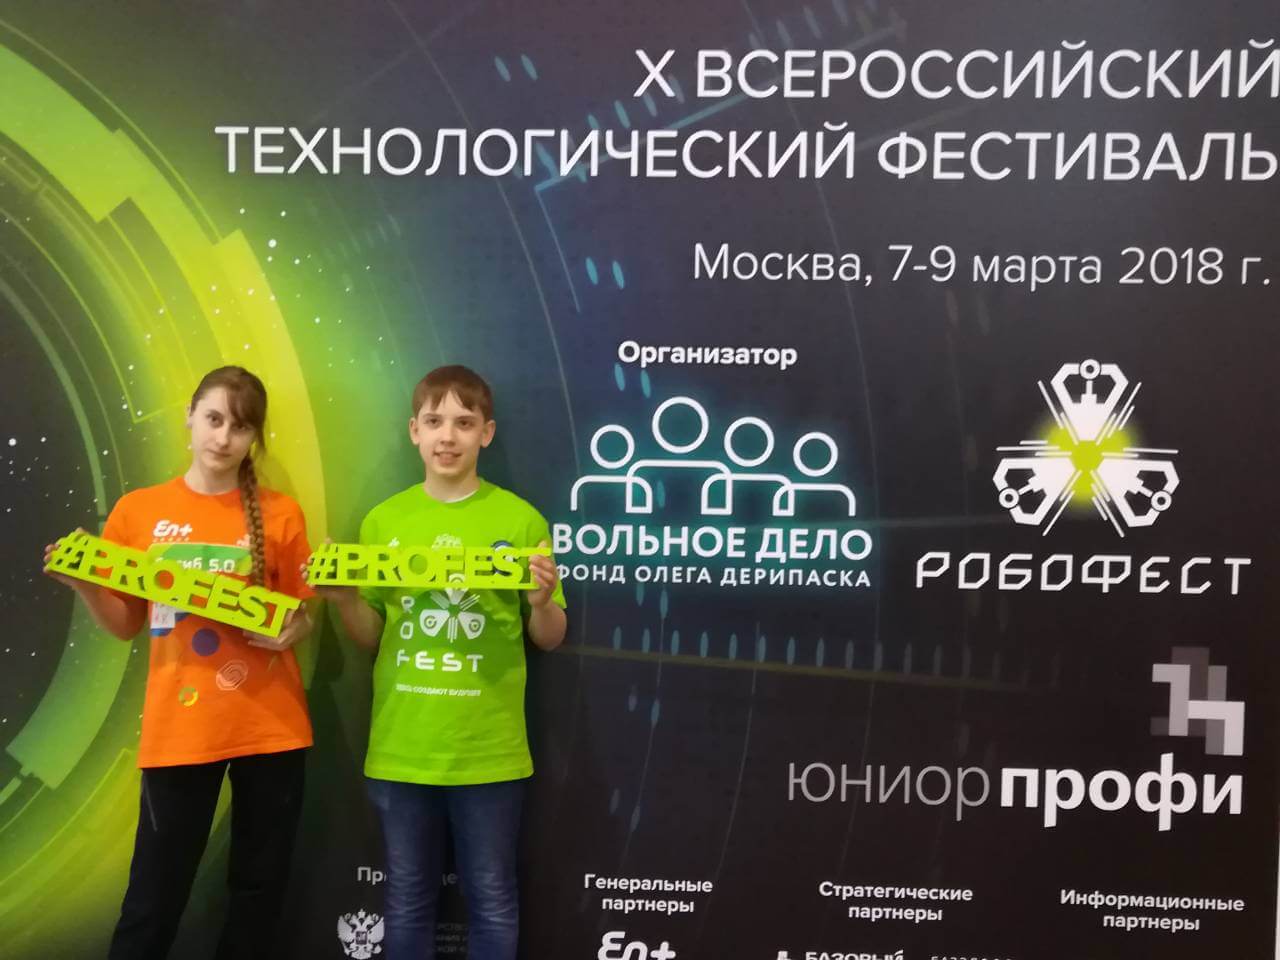 X Всероссийский технологический фестиваль “PROFEST”